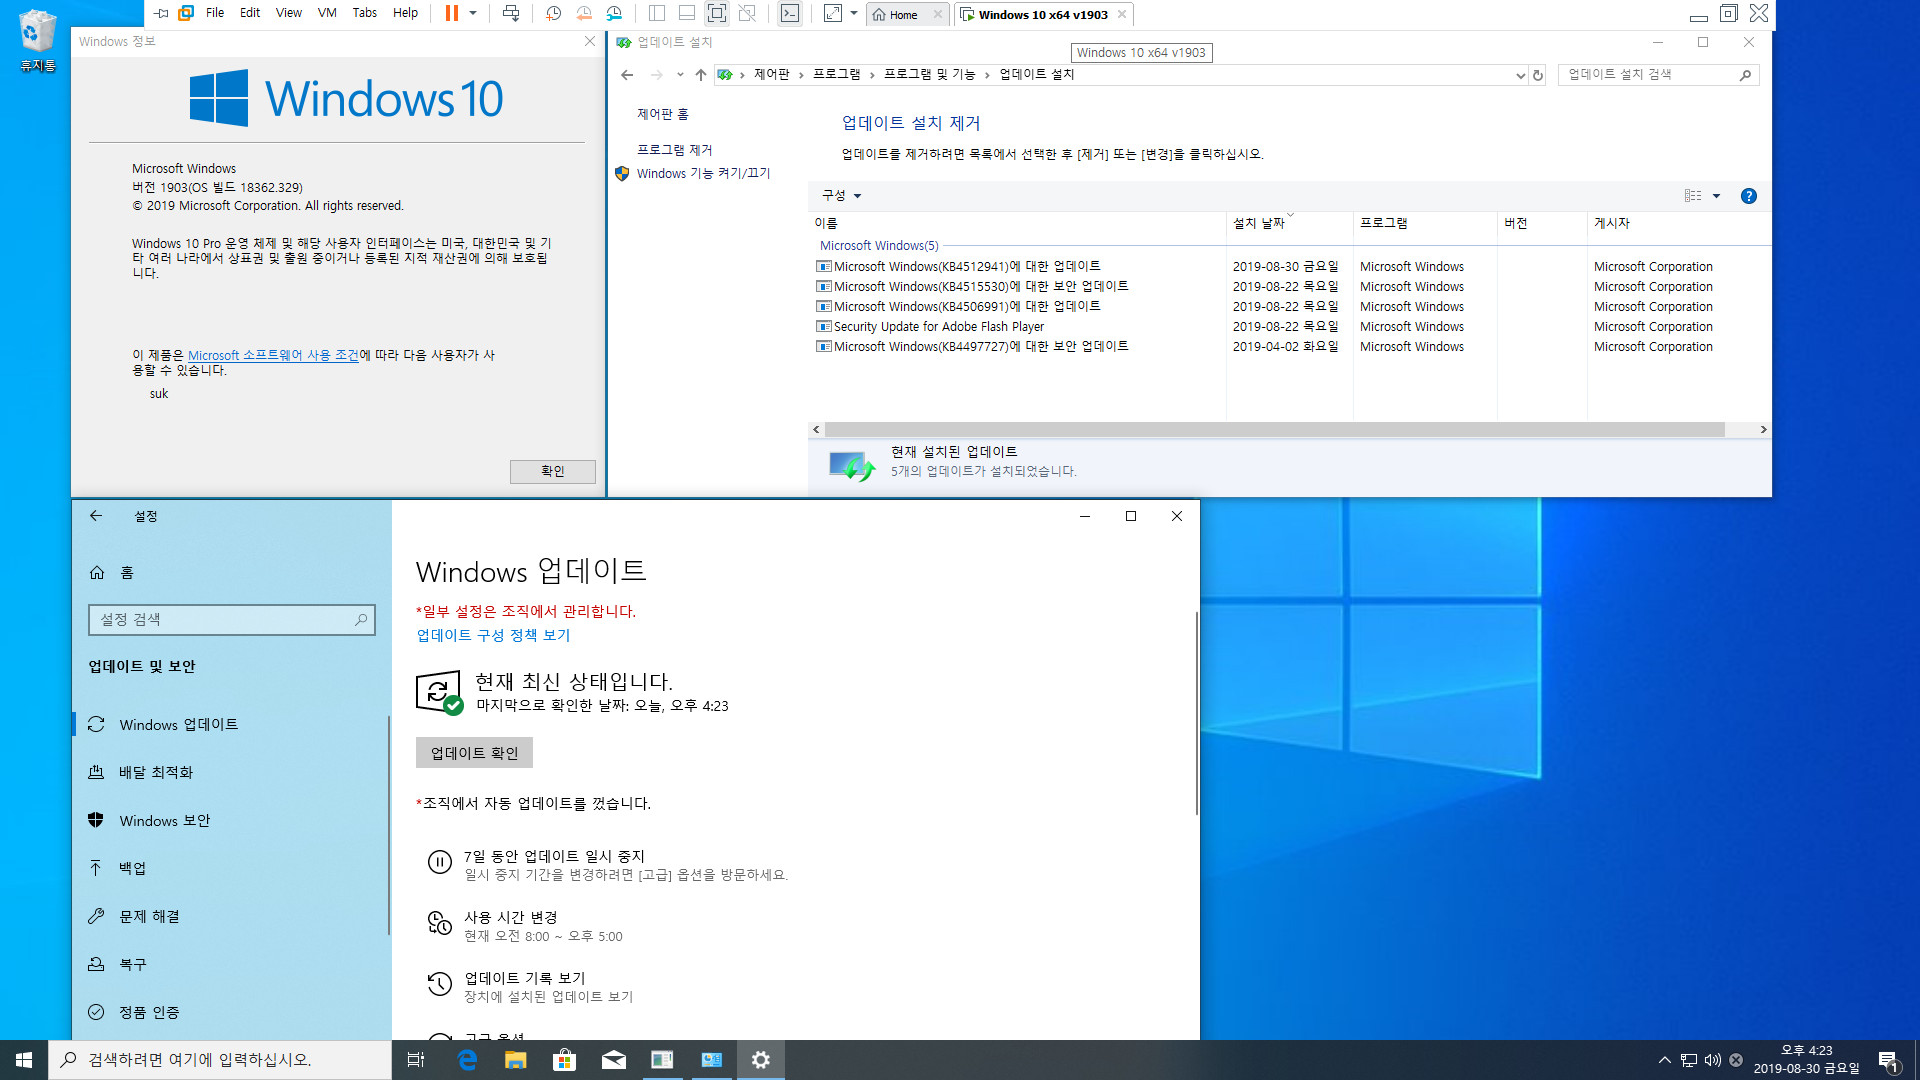 Windows 10 버전 1903 누적 업데이트 KB4512941 (OS 빌드 18362.329) [2019-08-29 일자] 릴리스 프리뷰 나왔네요 - vmware 에서 설치 테스트 2019-08-30_162306.jpg